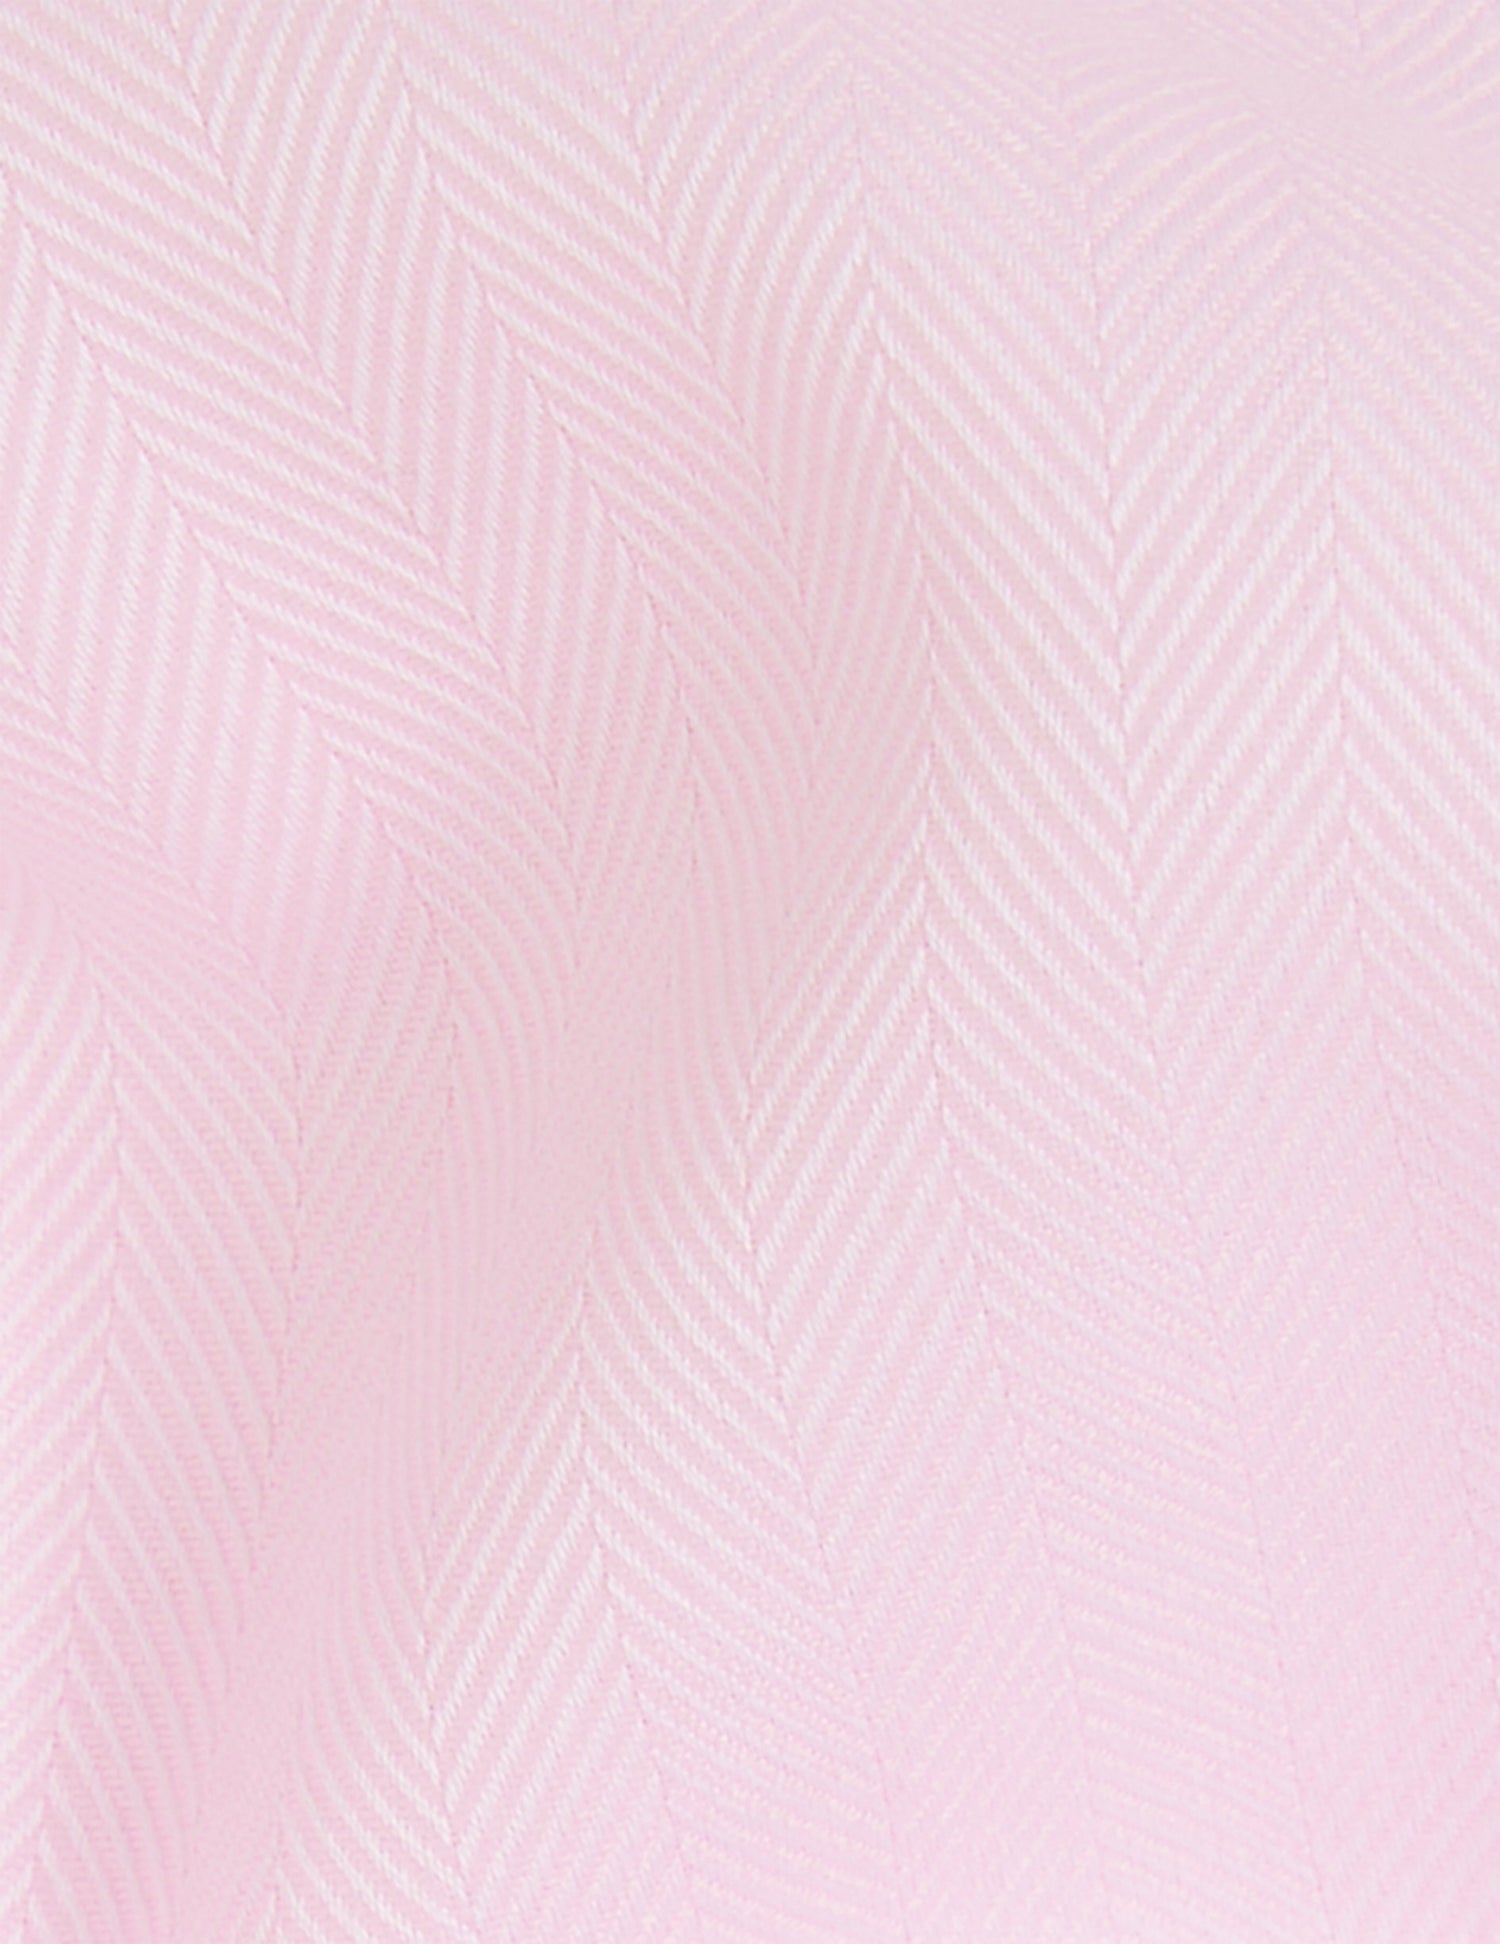 Hillie Hidden button placket pink shirt - Chevron - Shirt Collar - Musketeers Cuffs#5